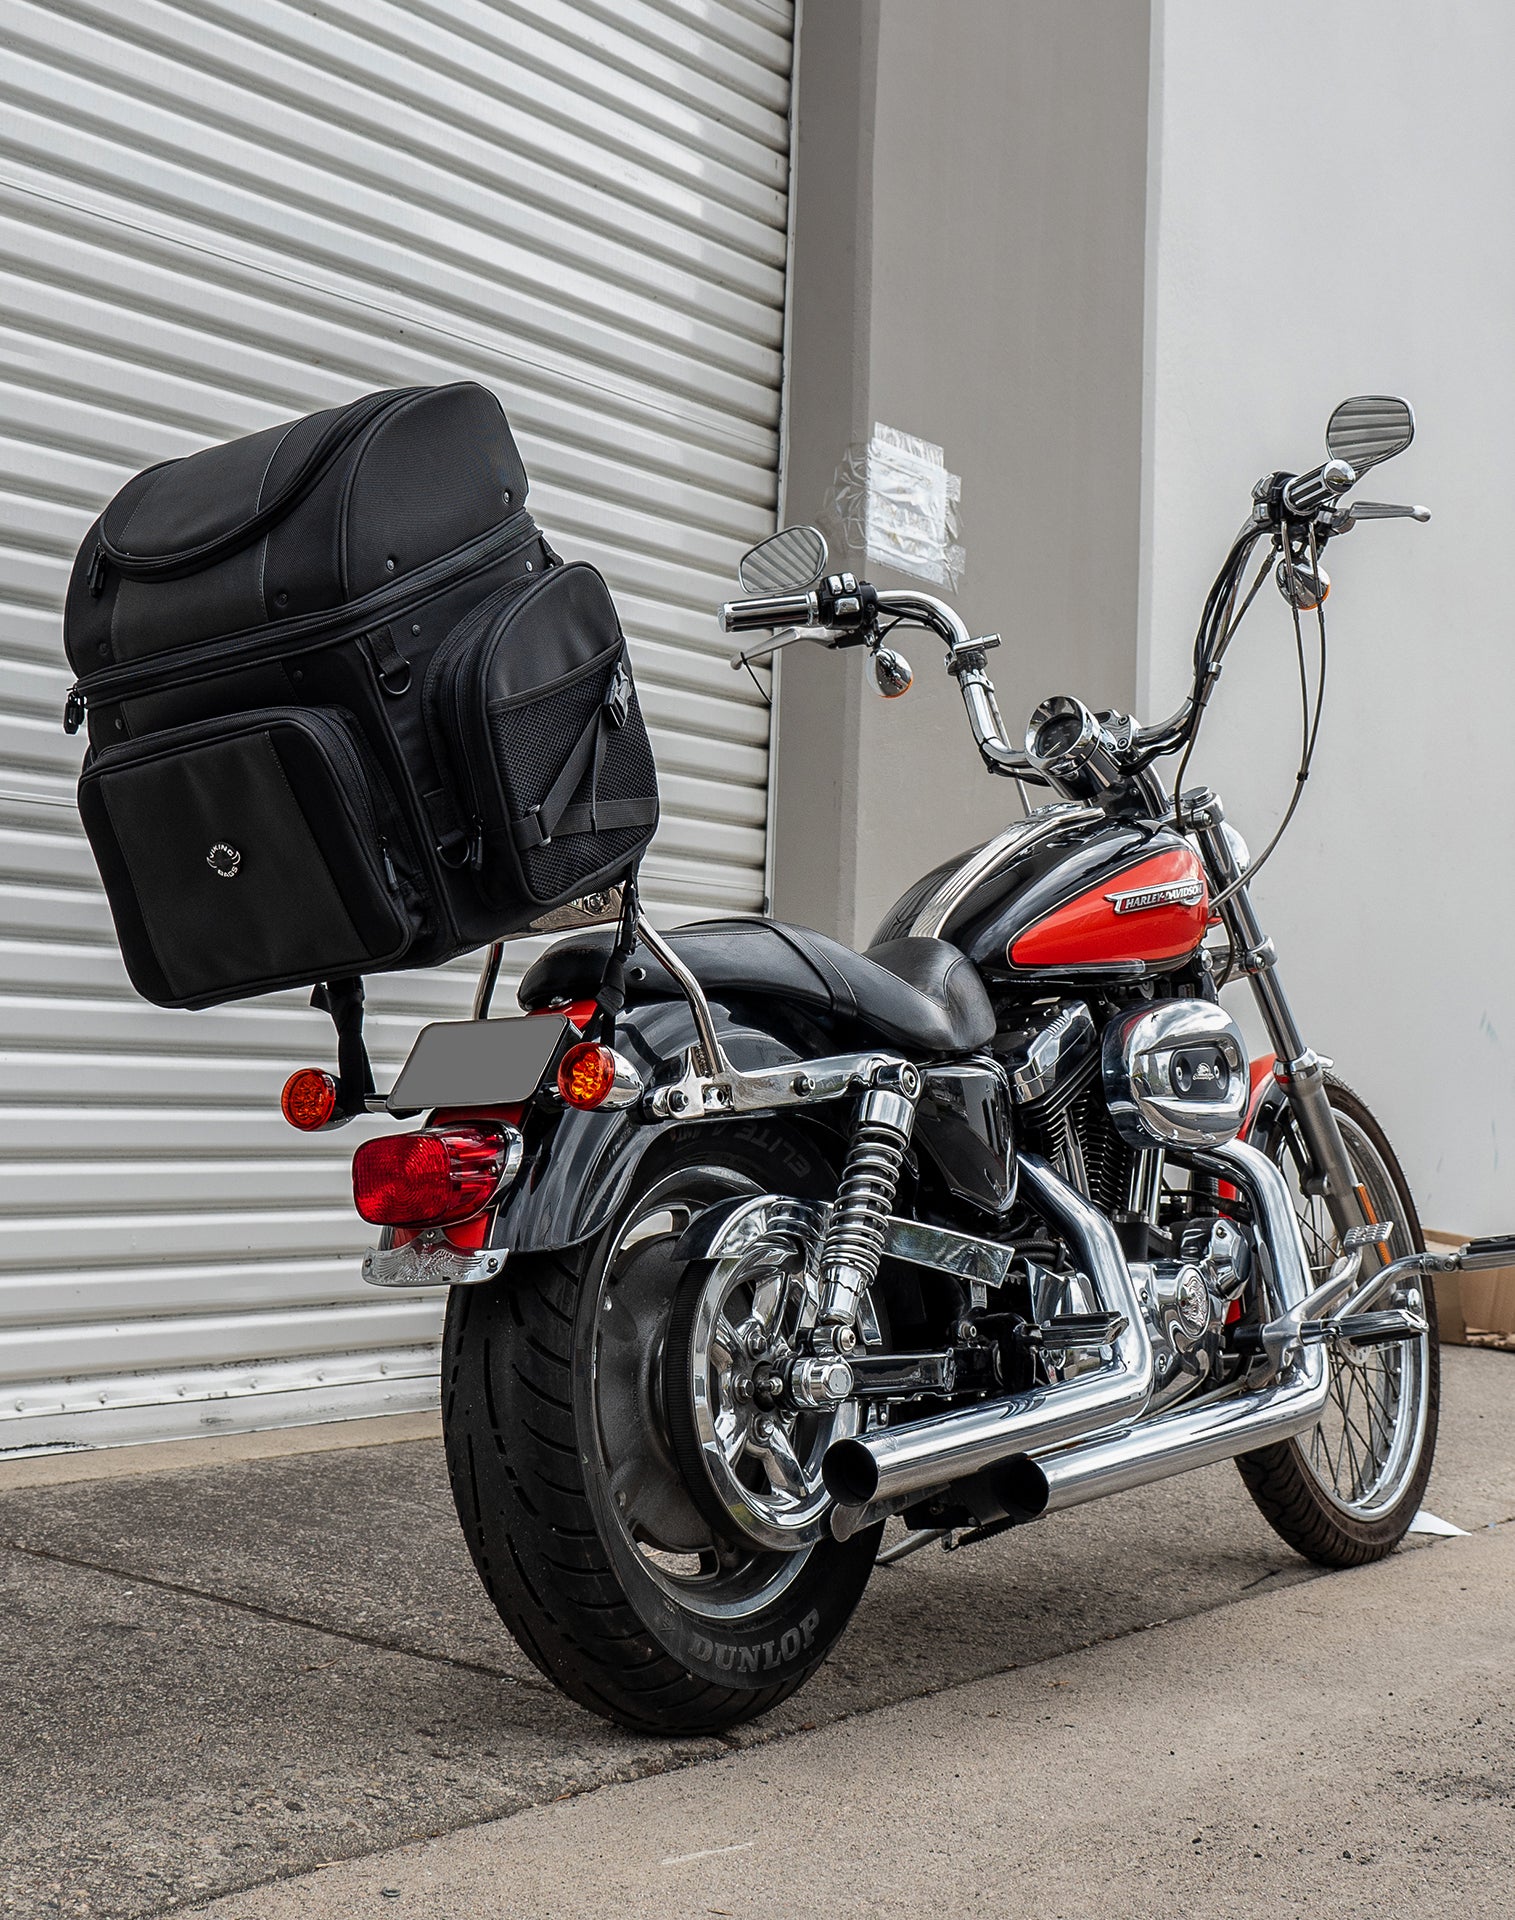 52L - Galleon XL Kawasaki Motorcycle Tail Bag